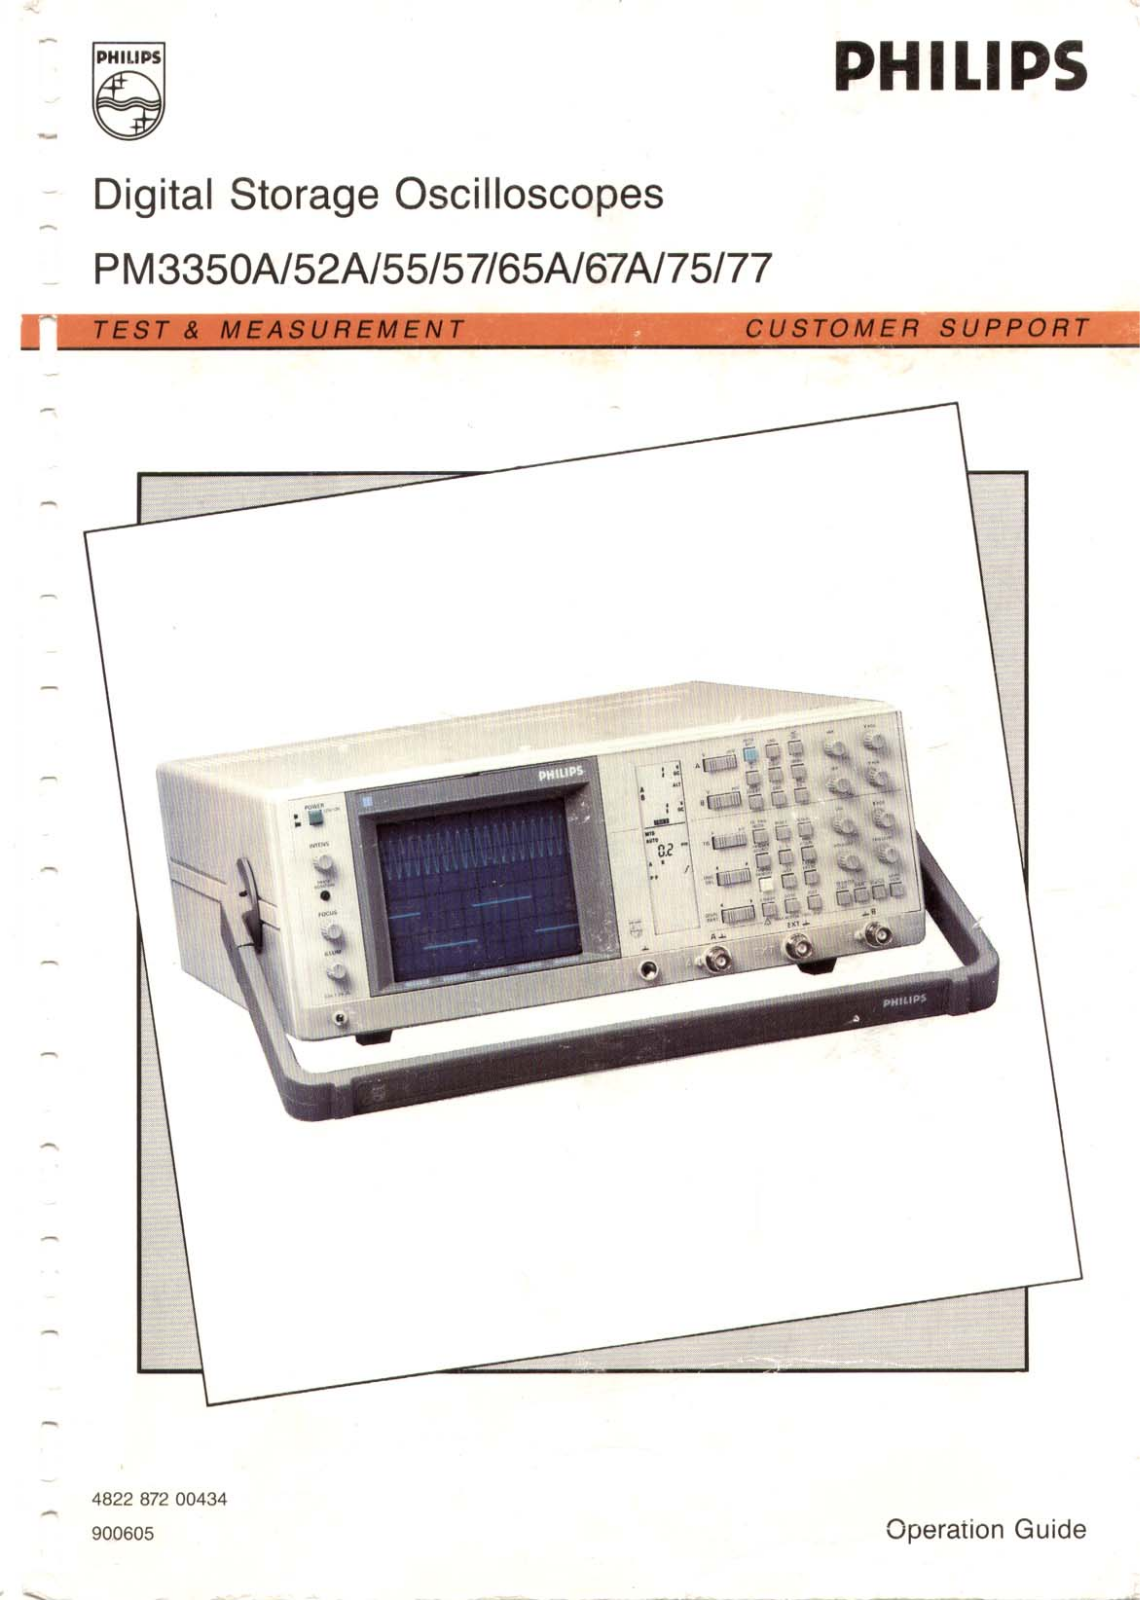 Philips PM3355, PM3352A, PM3350A, PM3367A, PM3375 User Manual